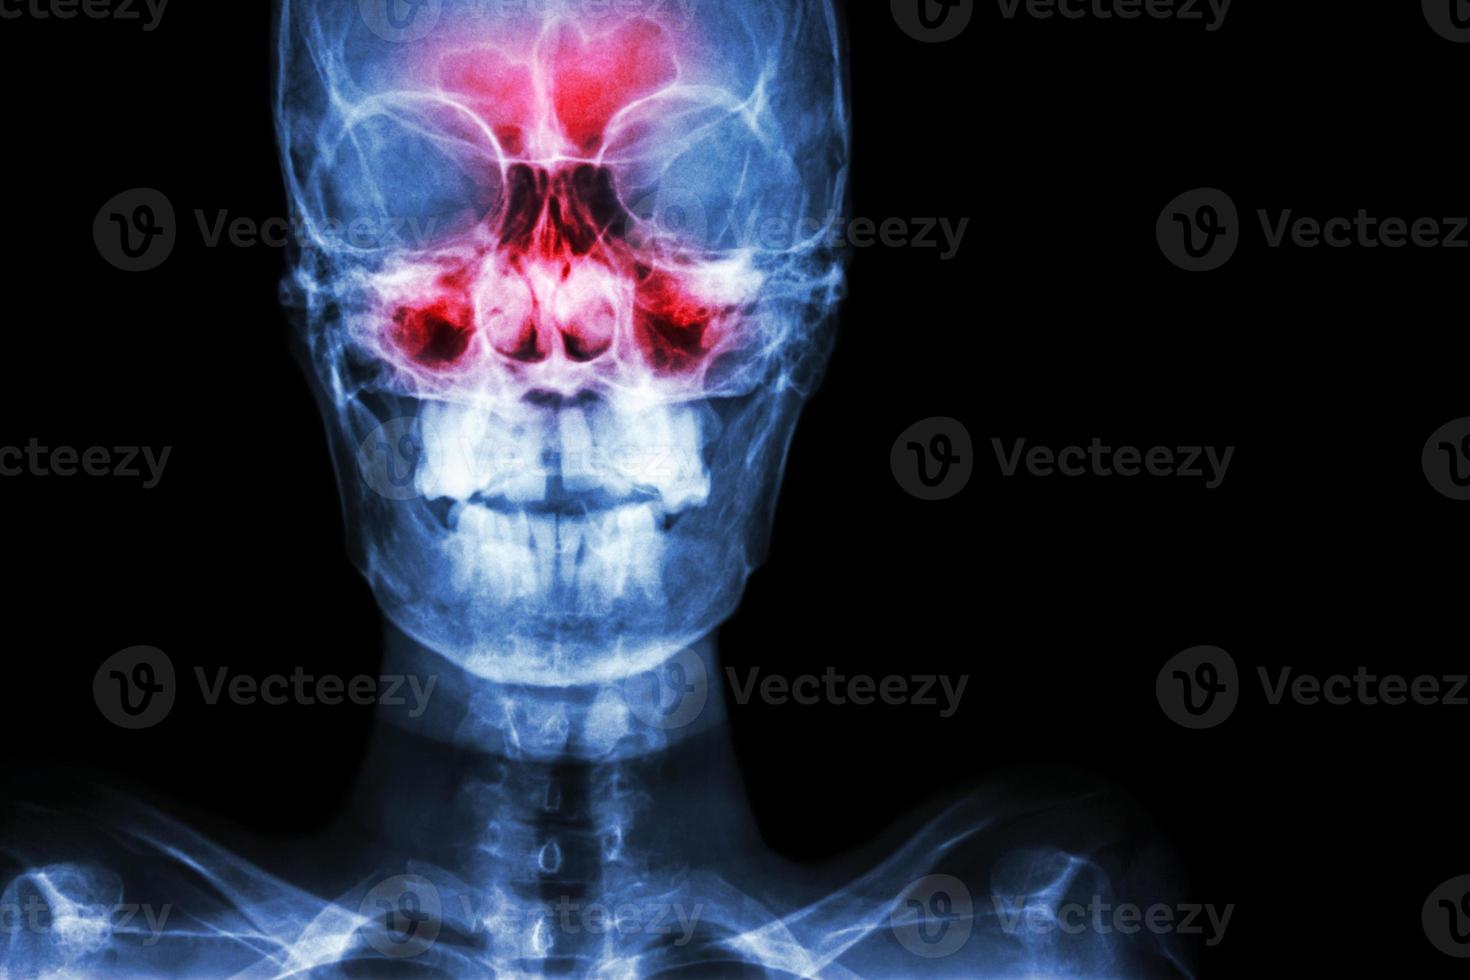 film röntgenfoto schedel ap anterieur - posterieur, toont infectie en ontsteking bij frontale sinus, ethmoid sinus, maxillaire sinus en blanco gebied aan de rechterkant foto